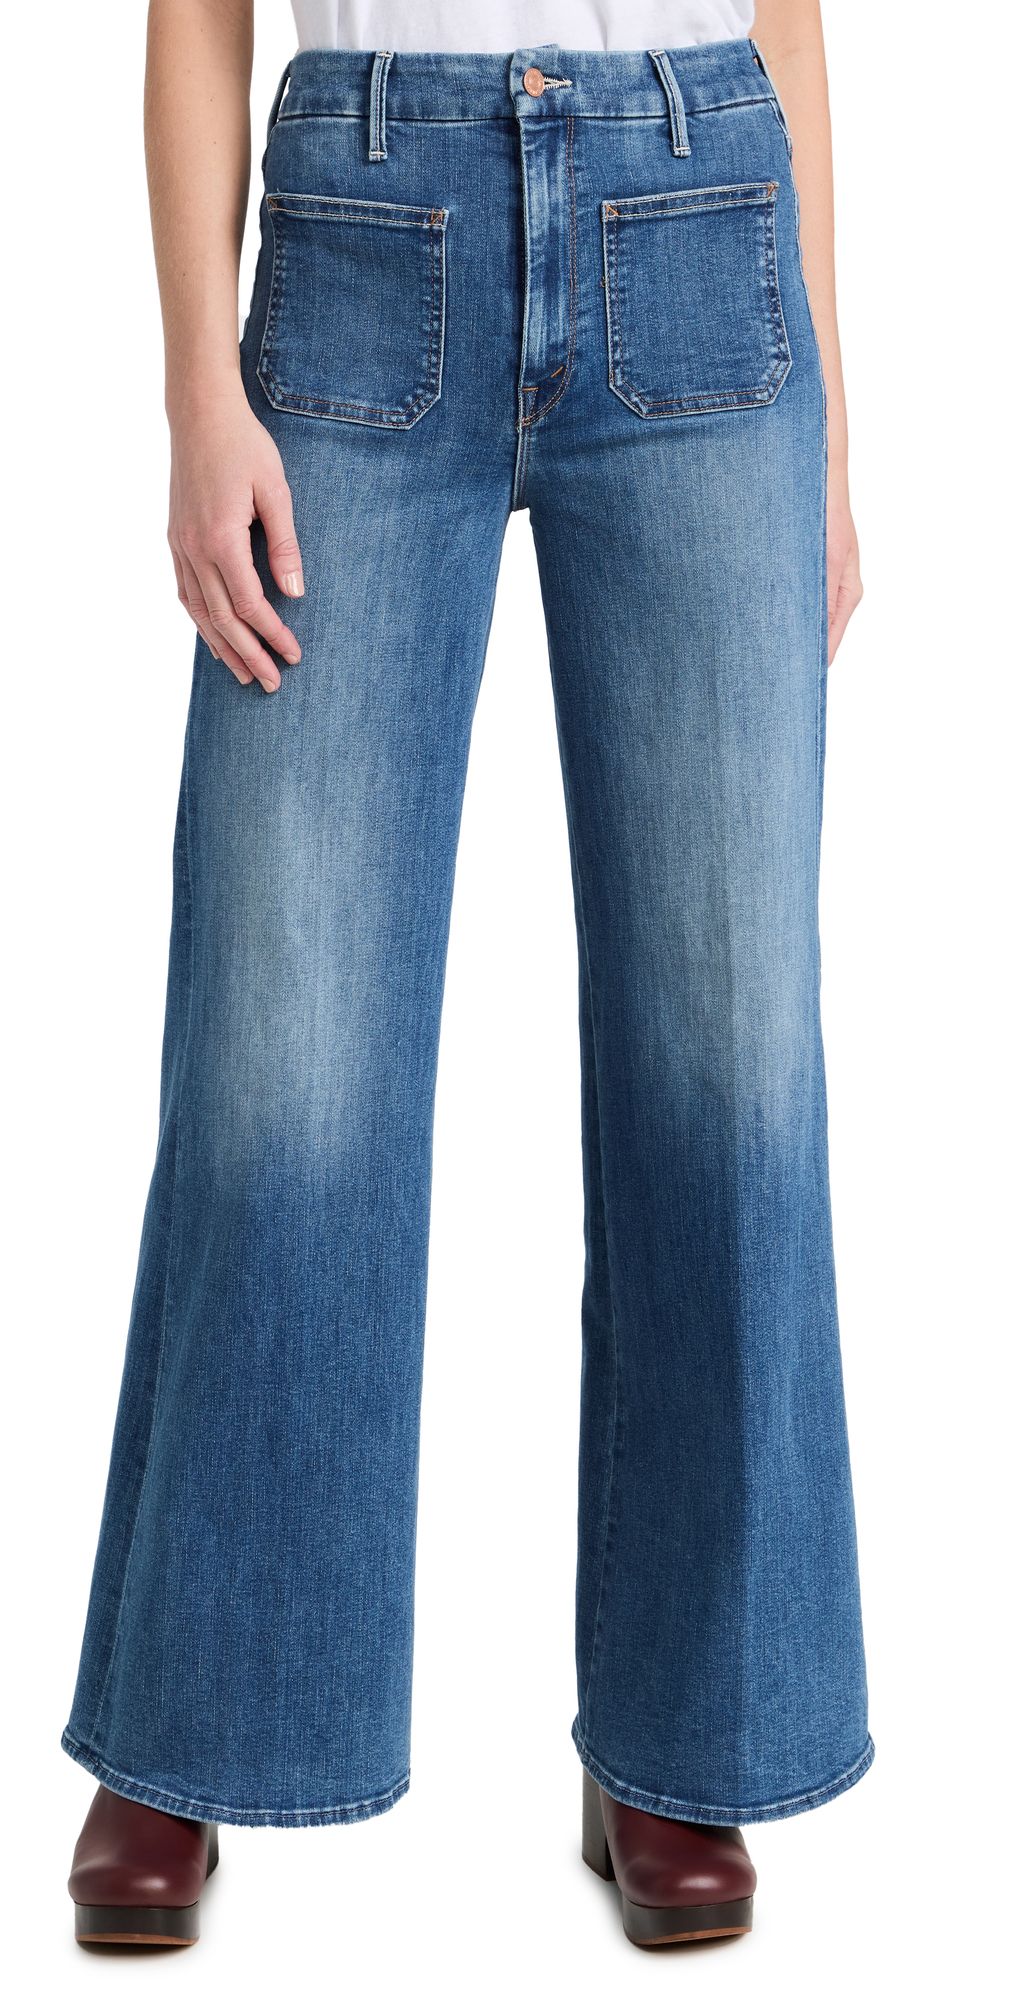 The Patch Pocket Roller Skimp Jeans | Shopbop